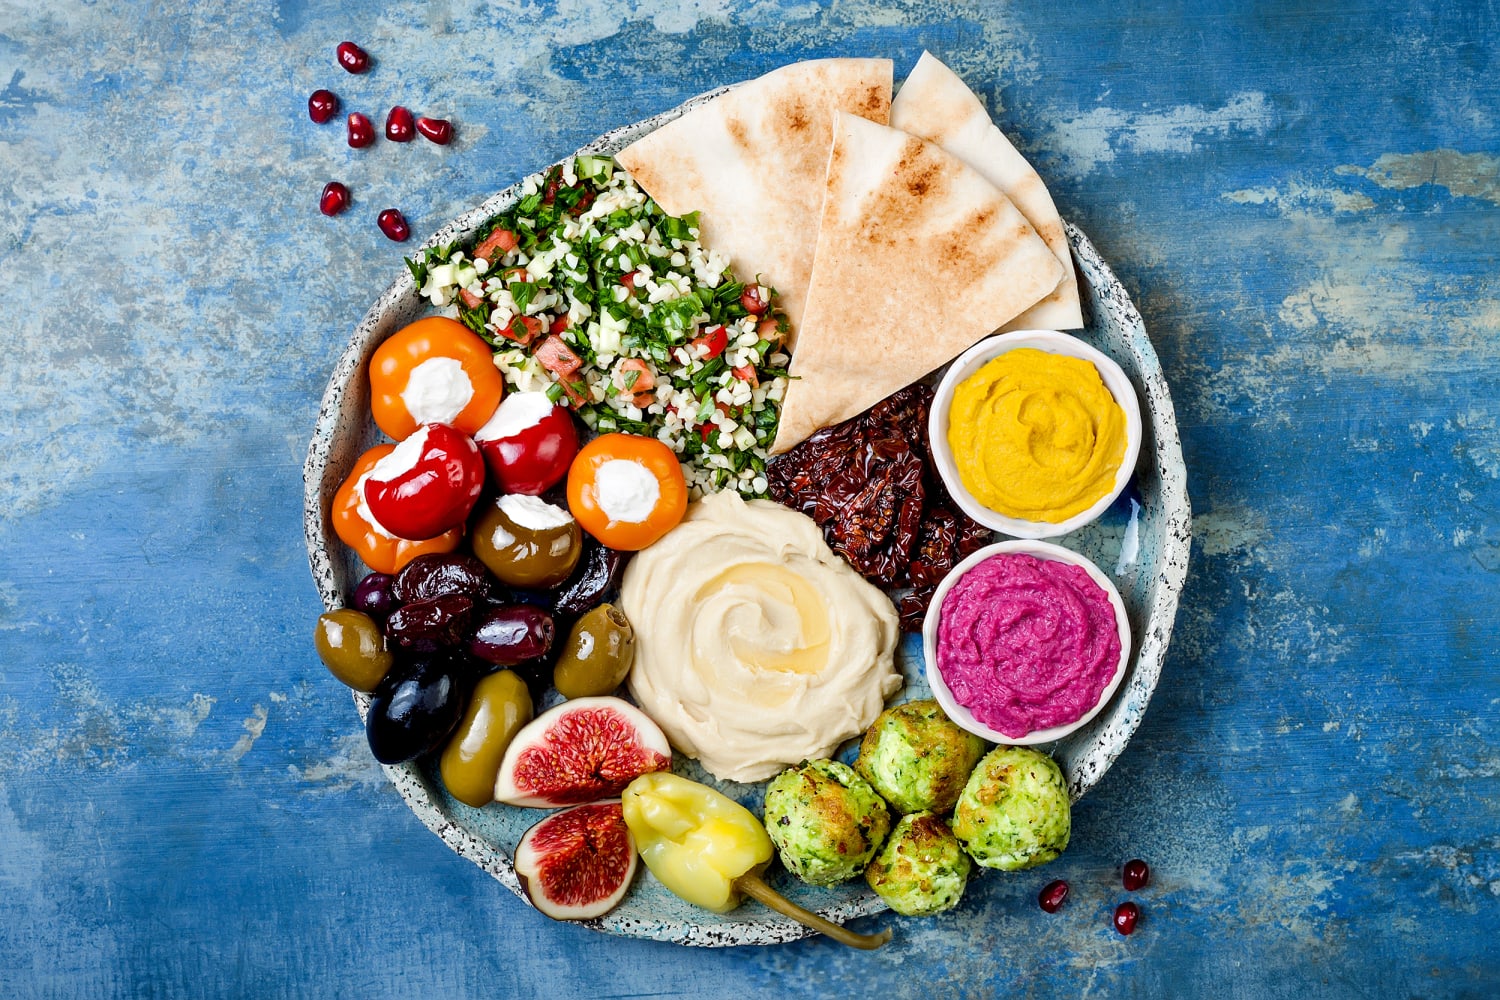 30 Mediterranean Diet Restaurant Menu Items — Eat This Not That